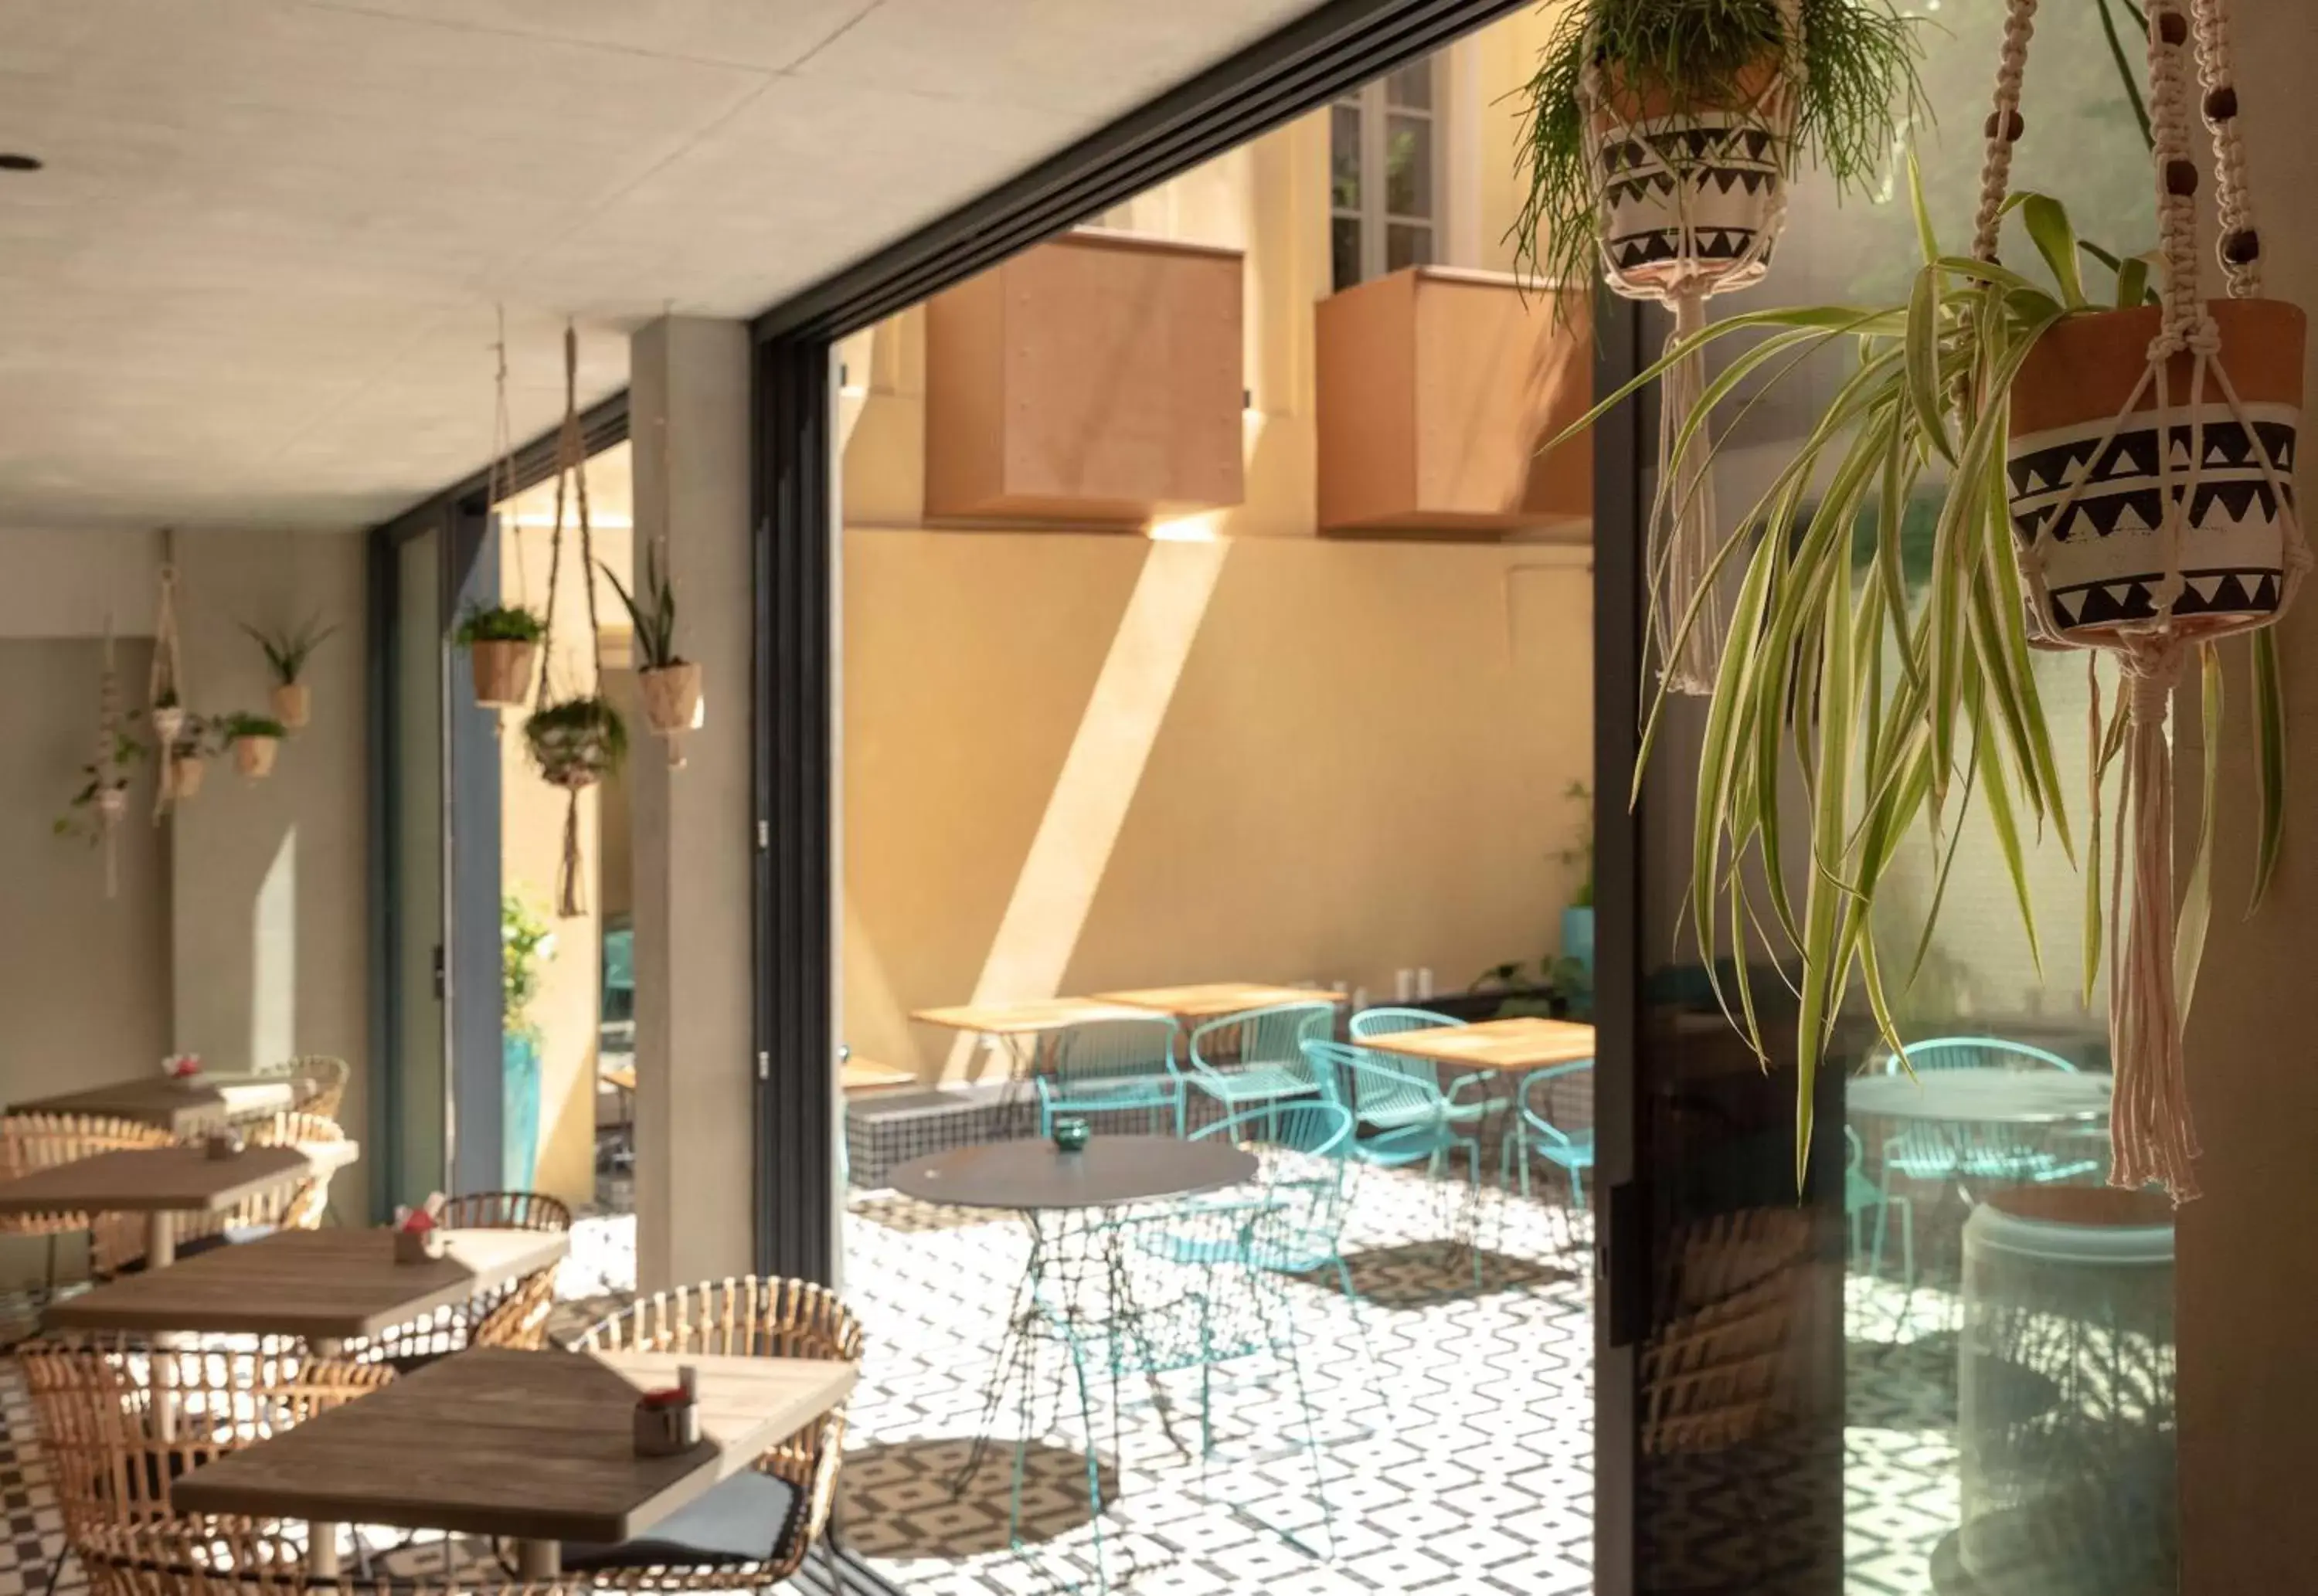 Property building, Restaurant/Places to Eat in Best Western Plus Hôtel La Joliette